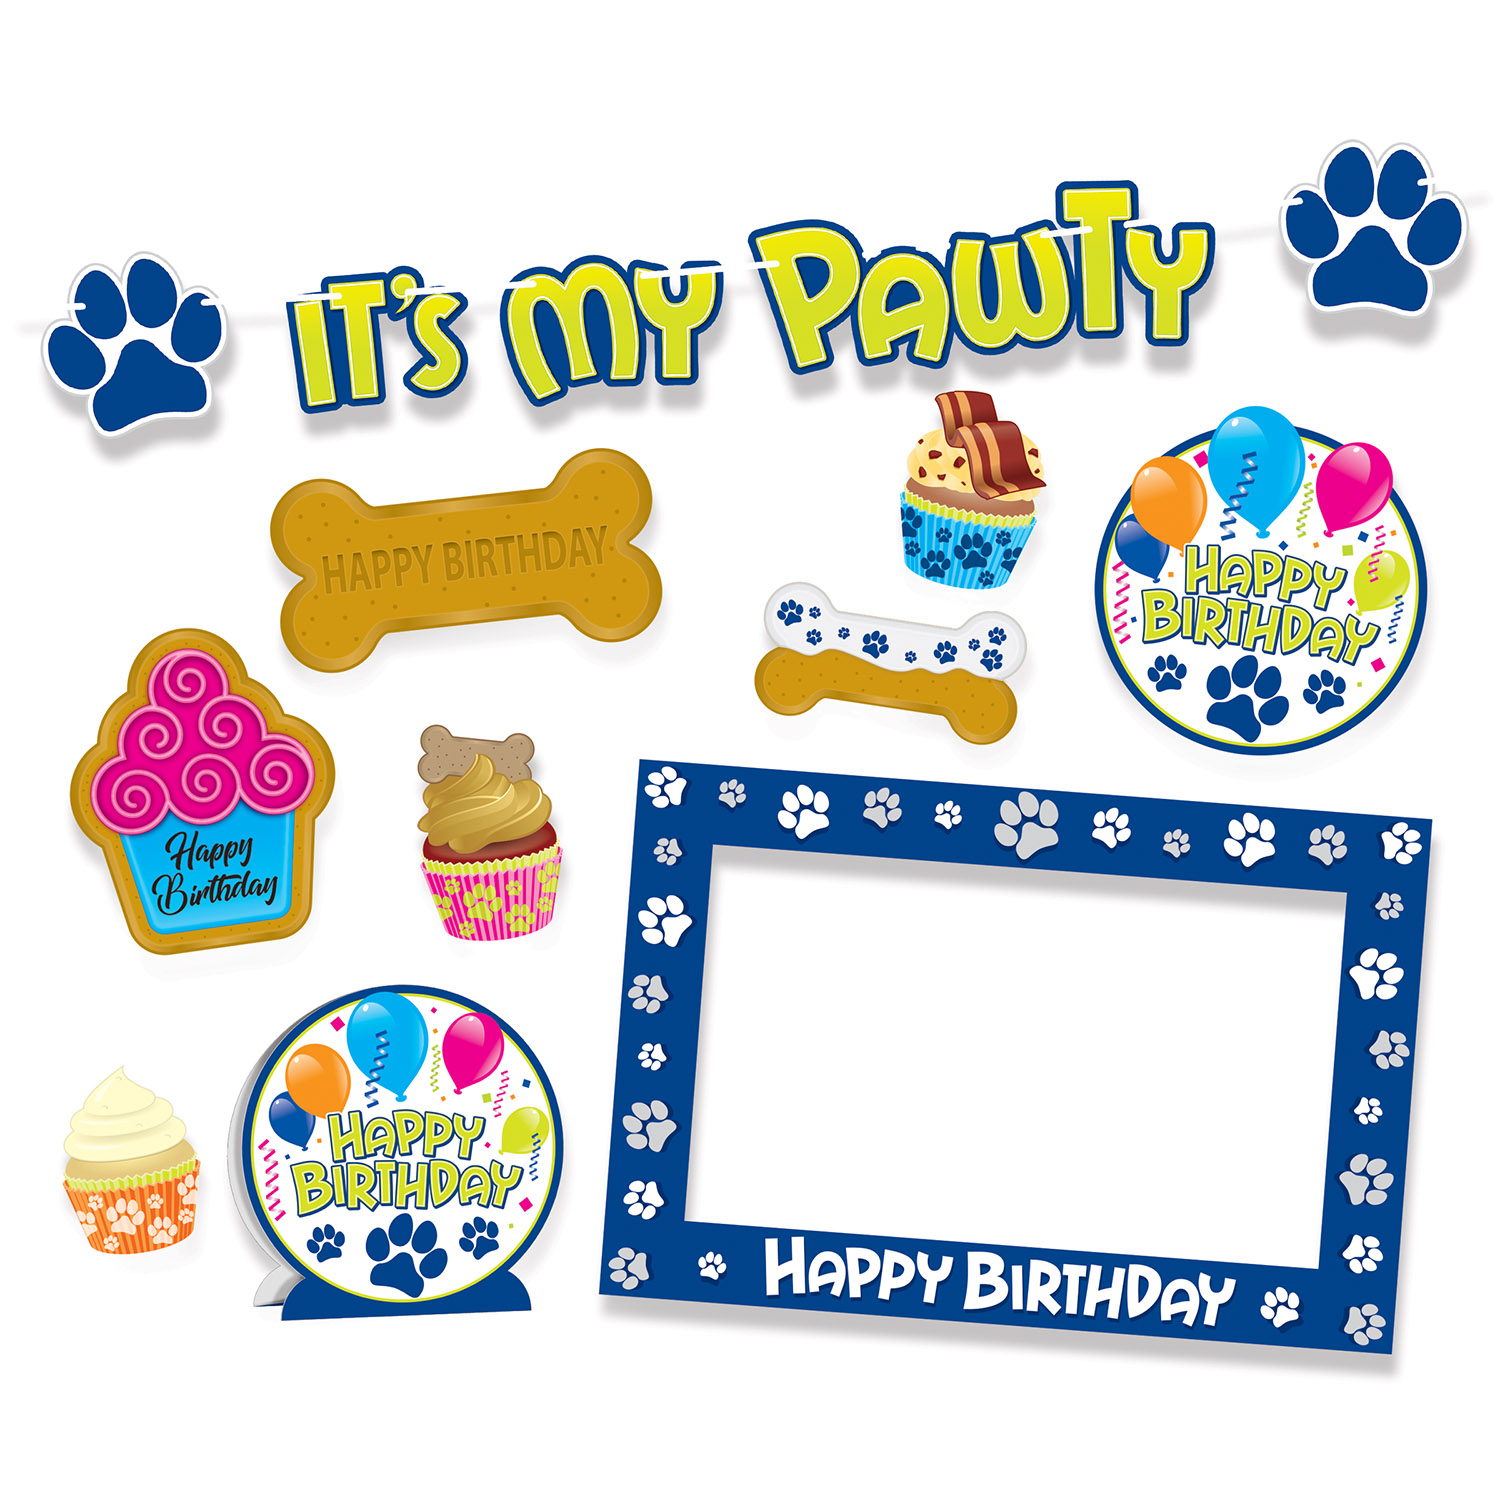 DOG Birthday Party Kit